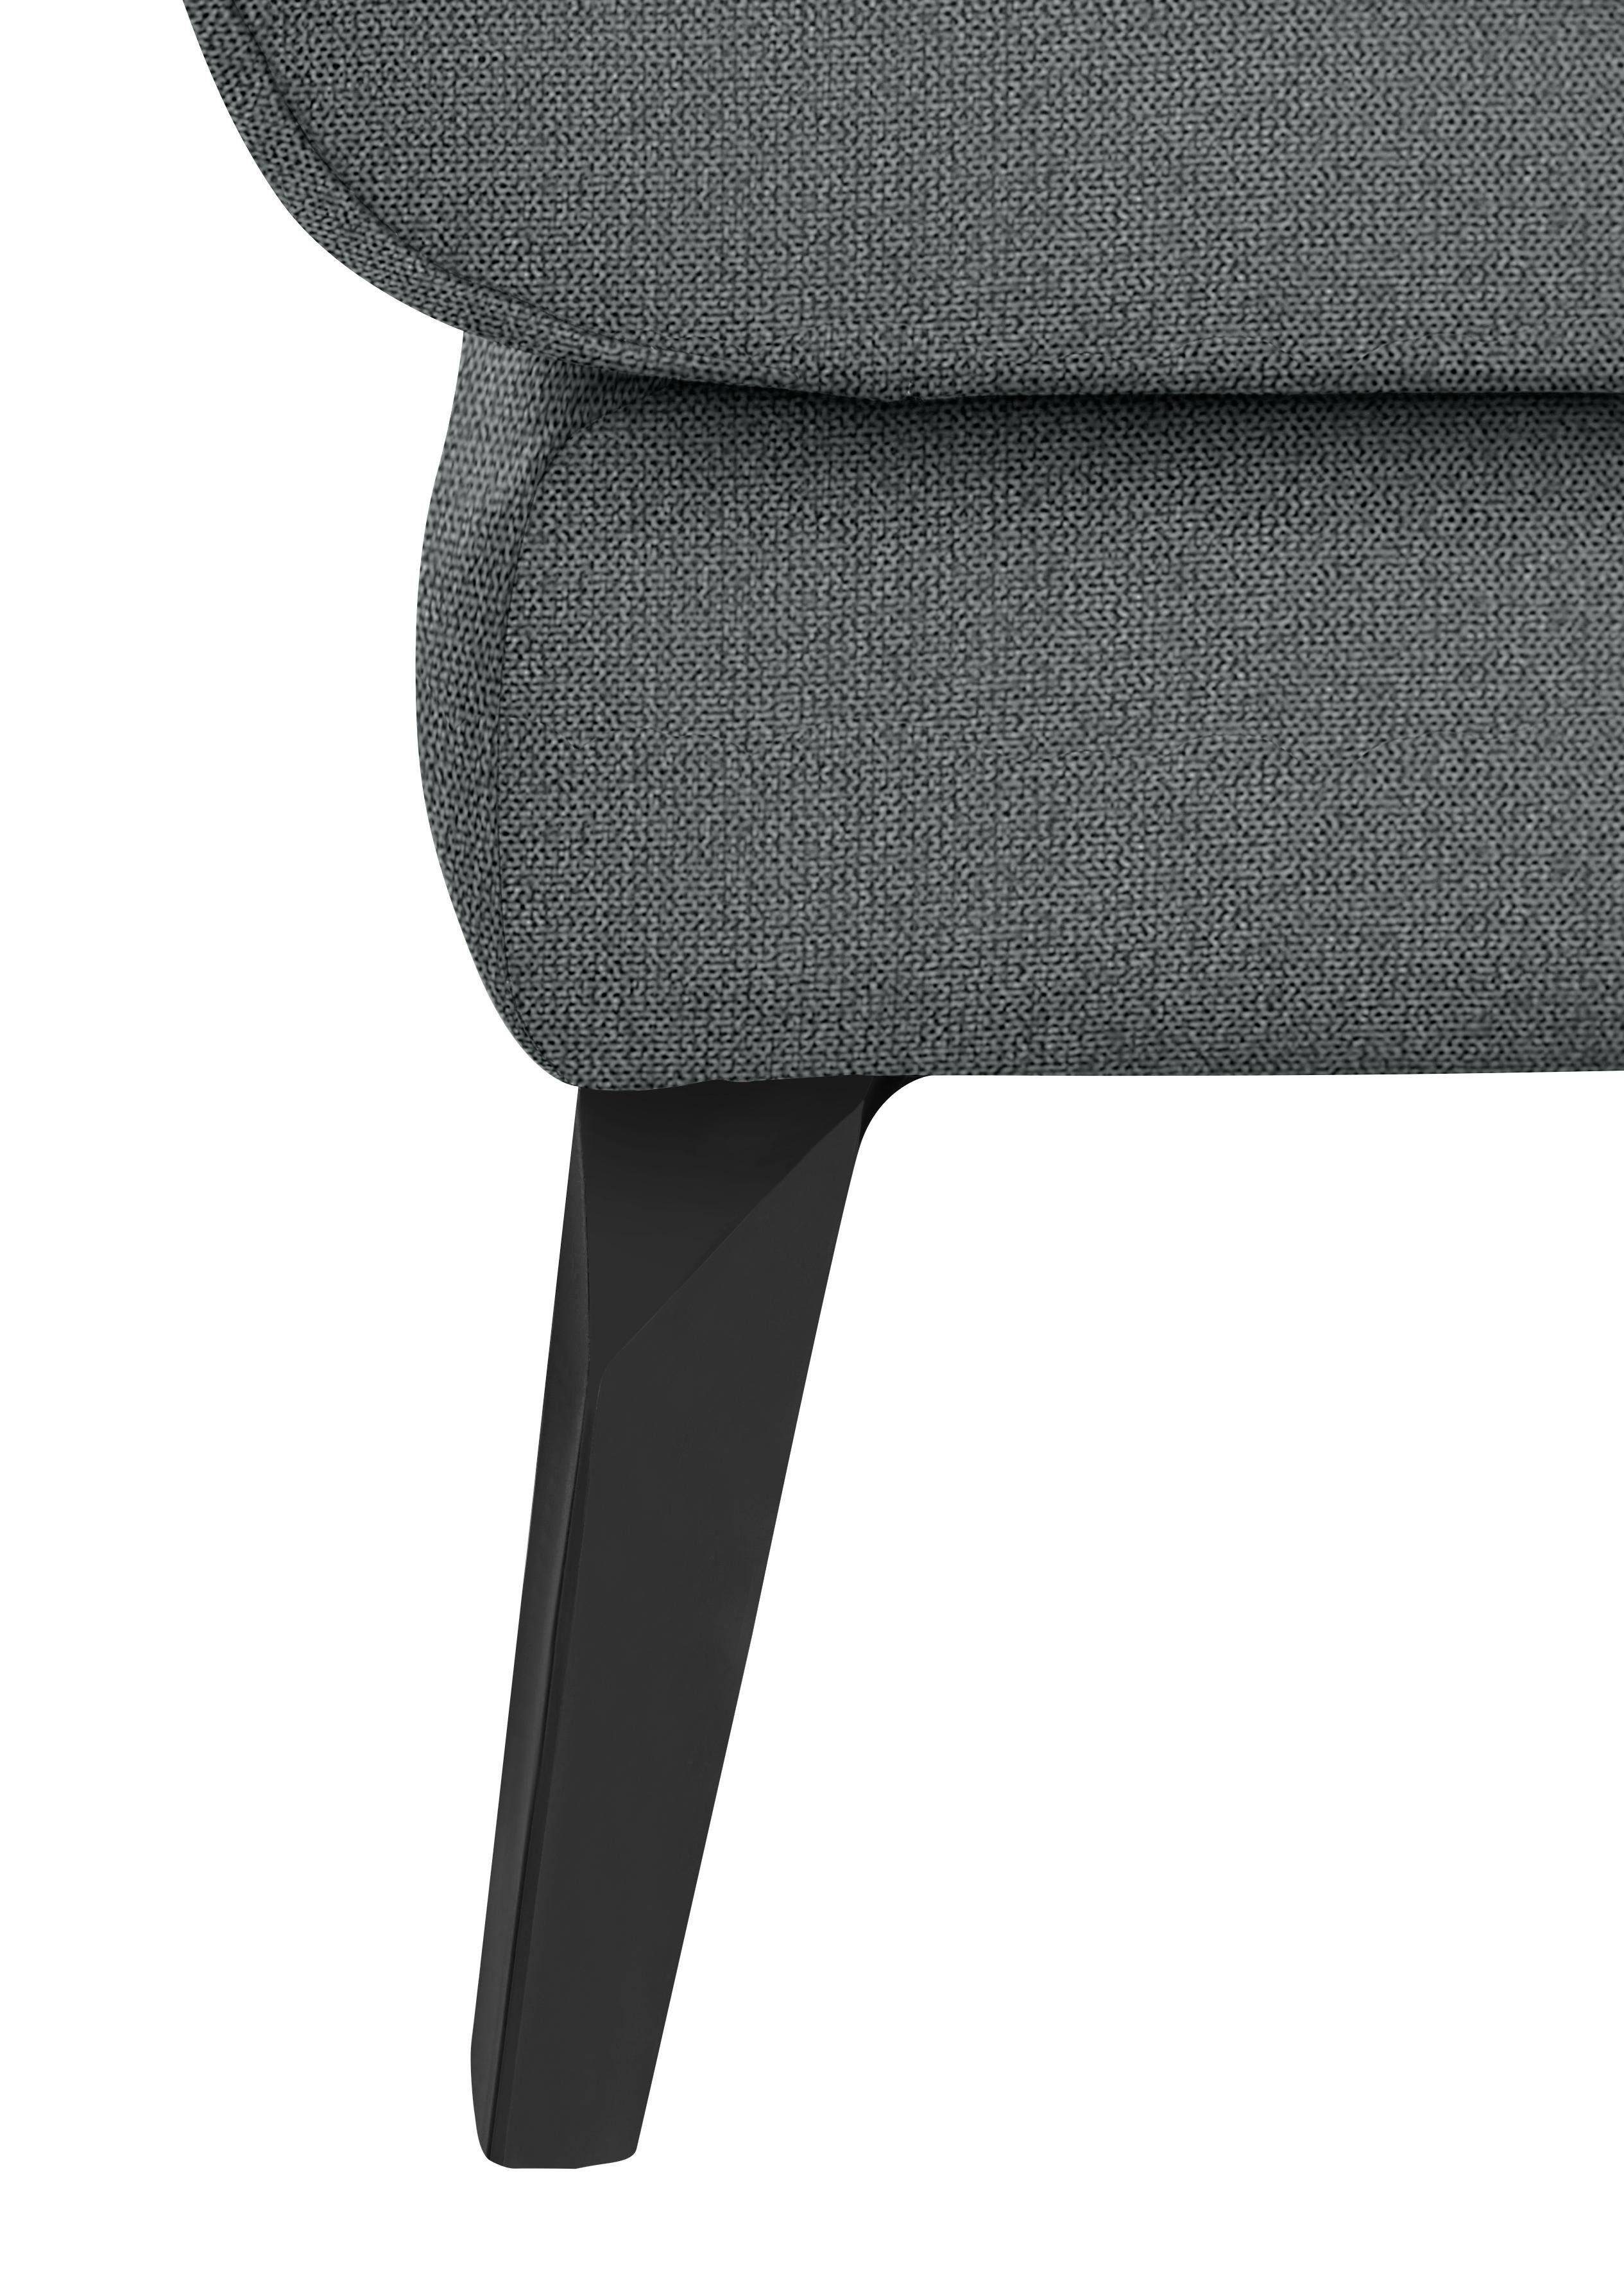 pulverbeschichtet Chaiselongue softy, schwarz im Heftung W.SCHILLIG dekorativer Sitz, mit Füße